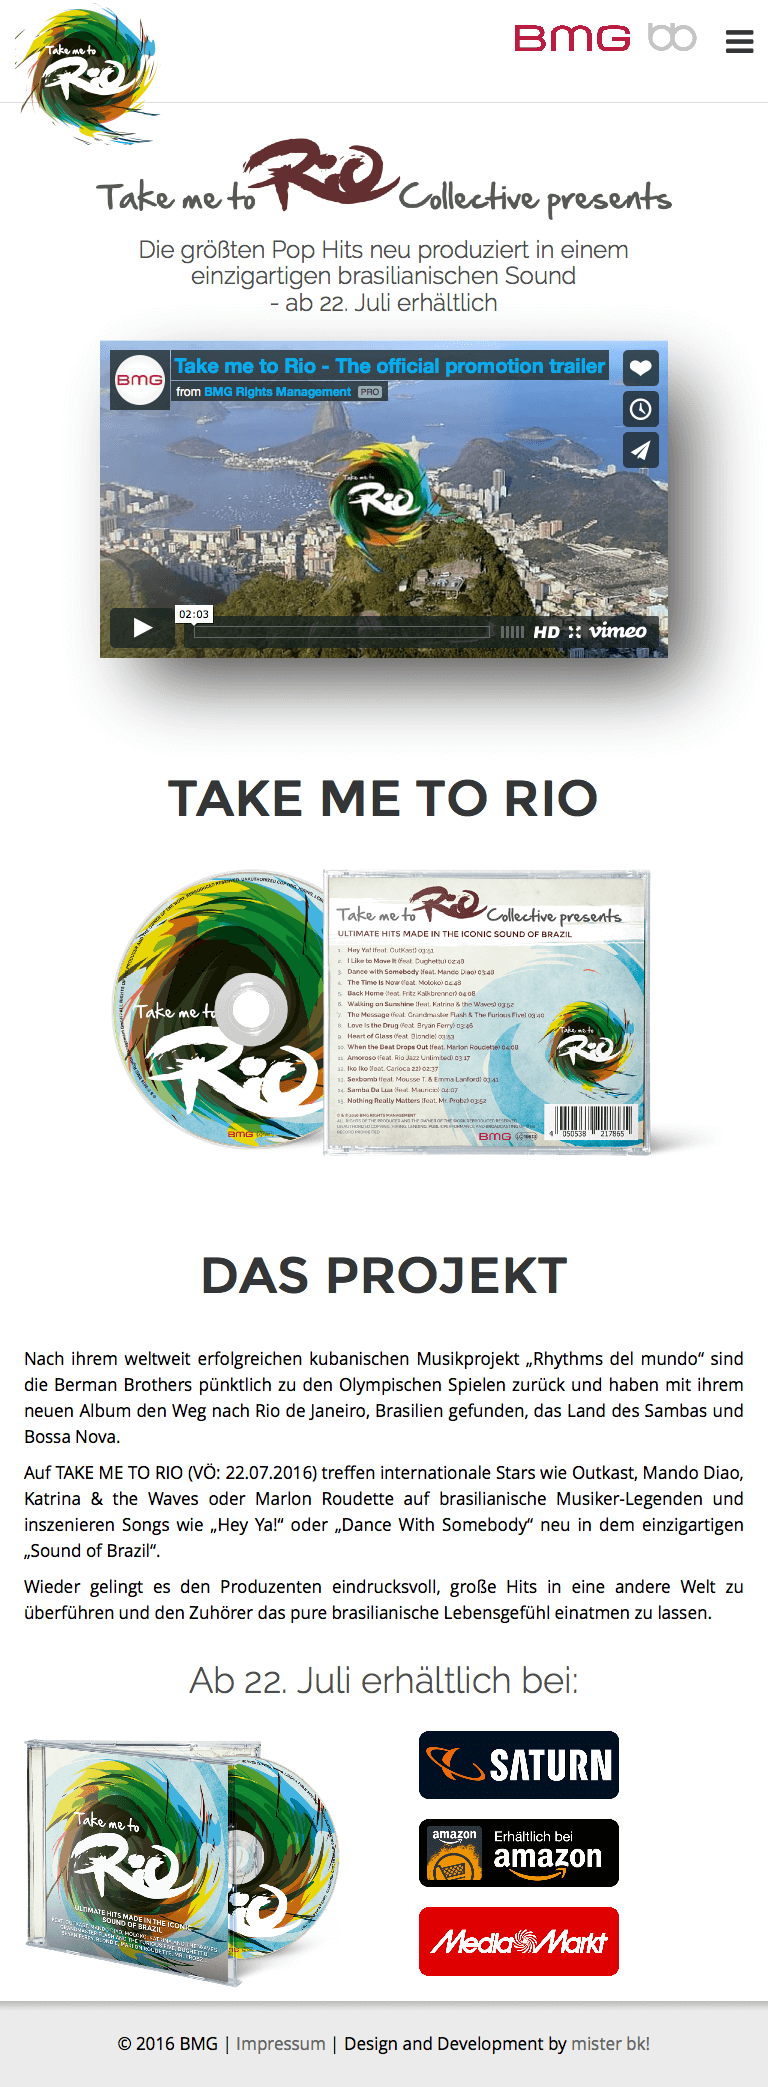 mister bk! | Referenz: BMG - Take me to Rio Website Tablet